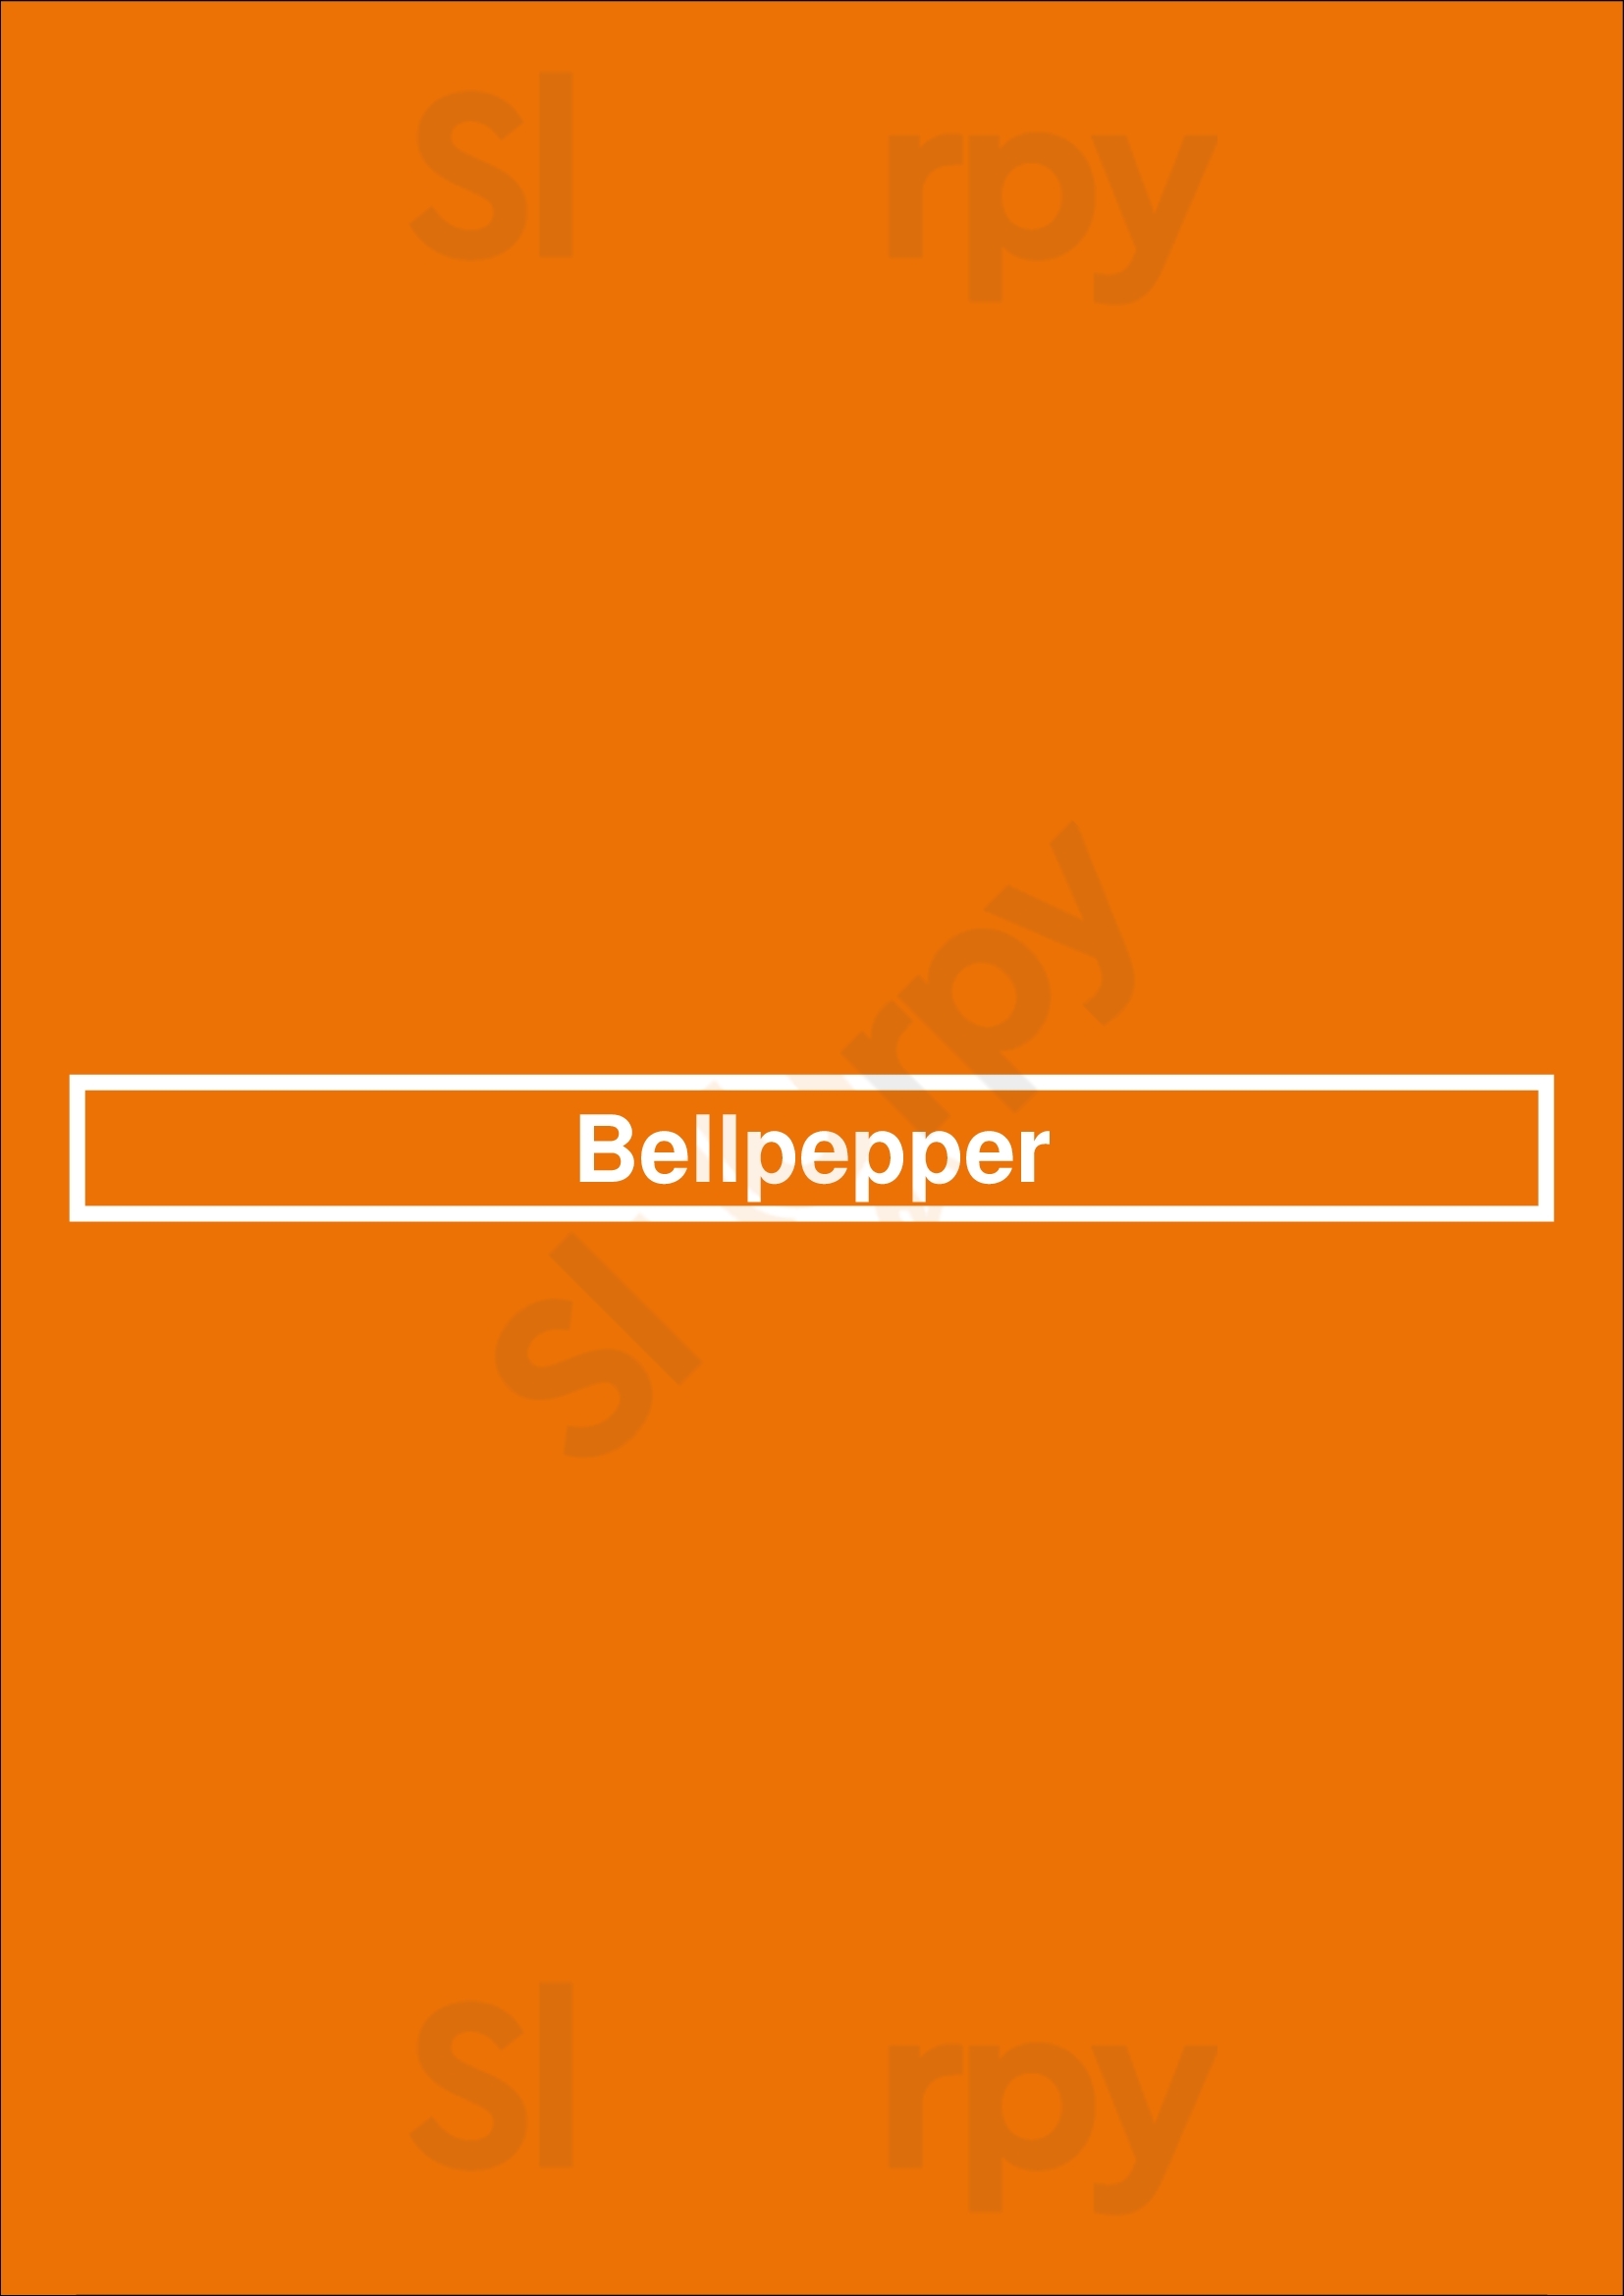 Bellpepper Restaurant Mainz Menu - 1